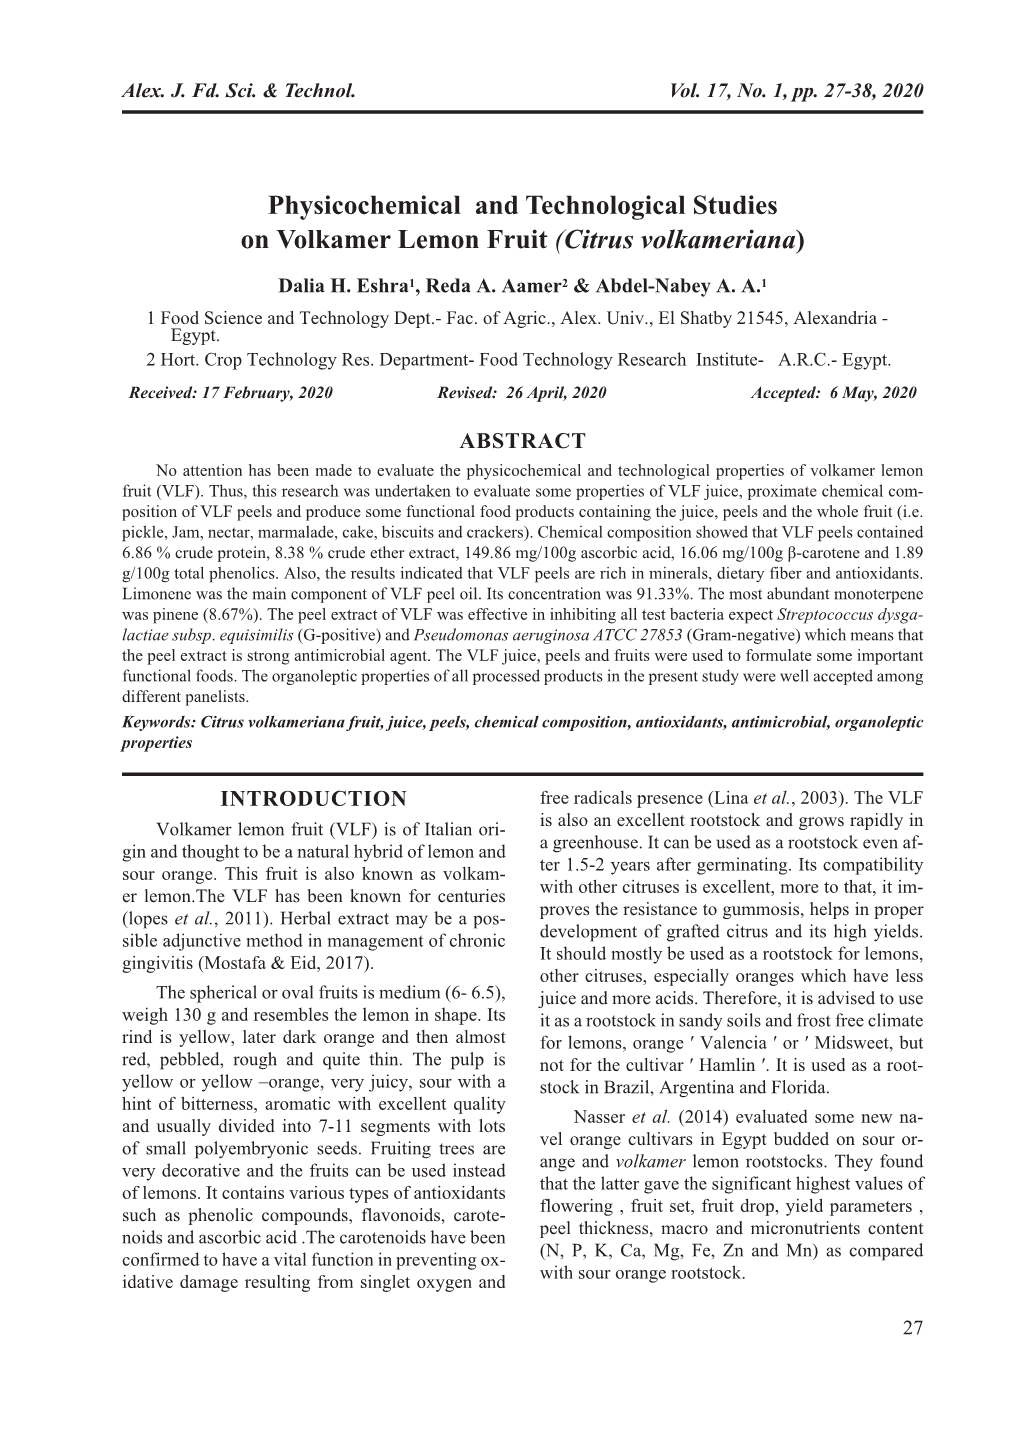 Physicochemical and Technological Studies on Volkamer Lemon Fruit (Citrus Volkameriana)